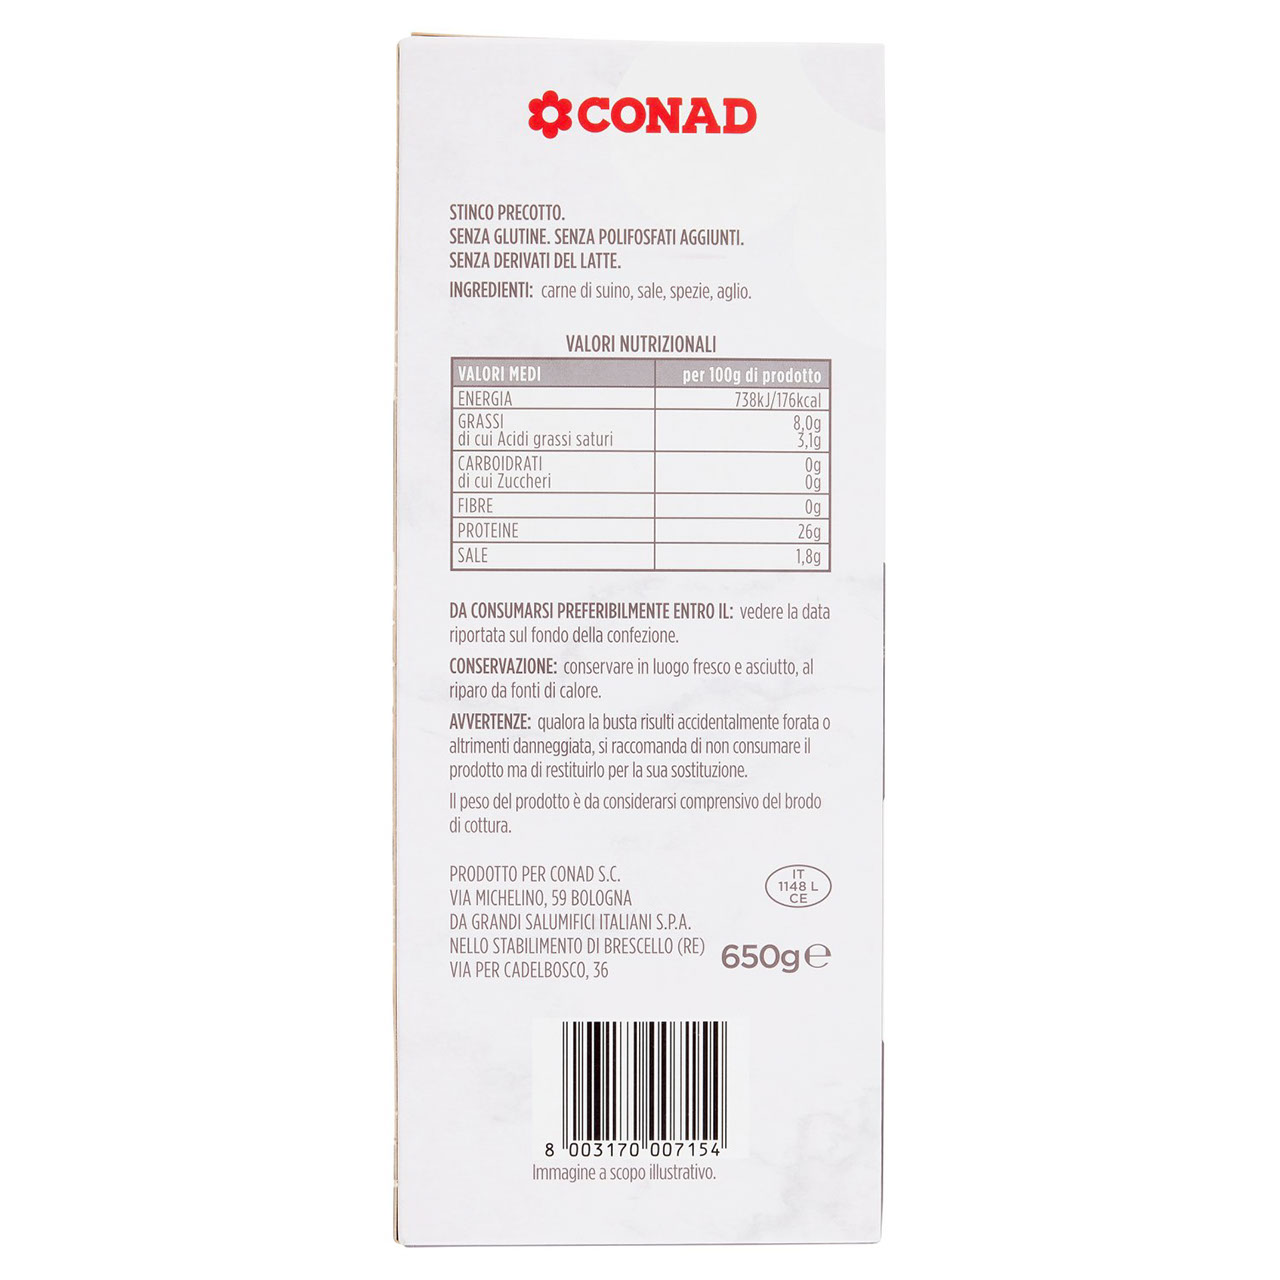 Stinco 650 g Conad in vendita online